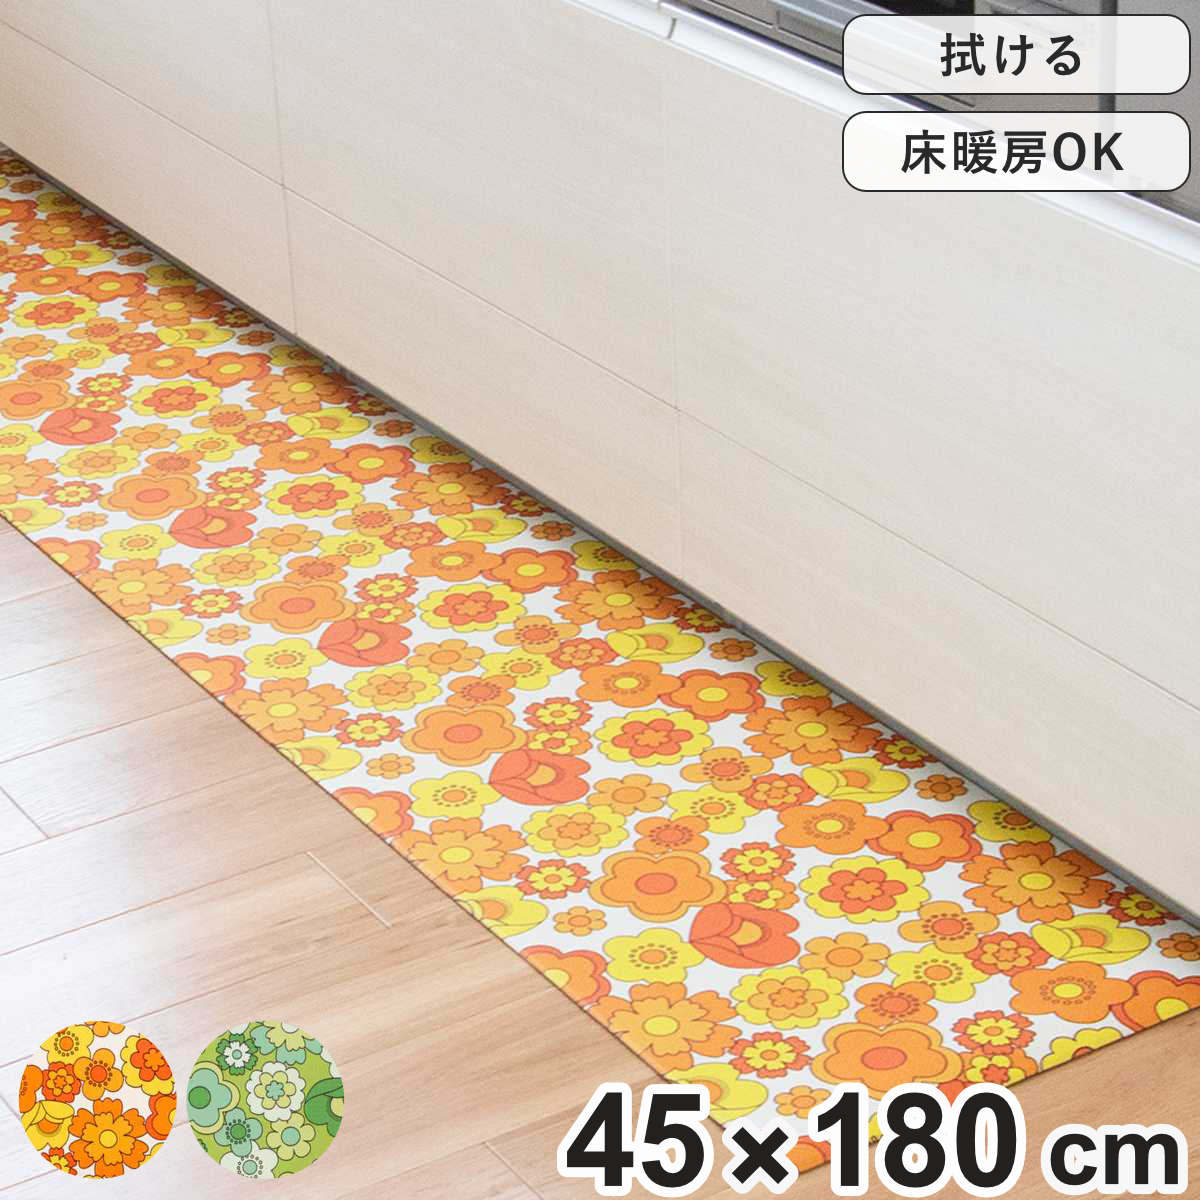 キッチンマット レトロ 花柄 ルアンス 45×180cm